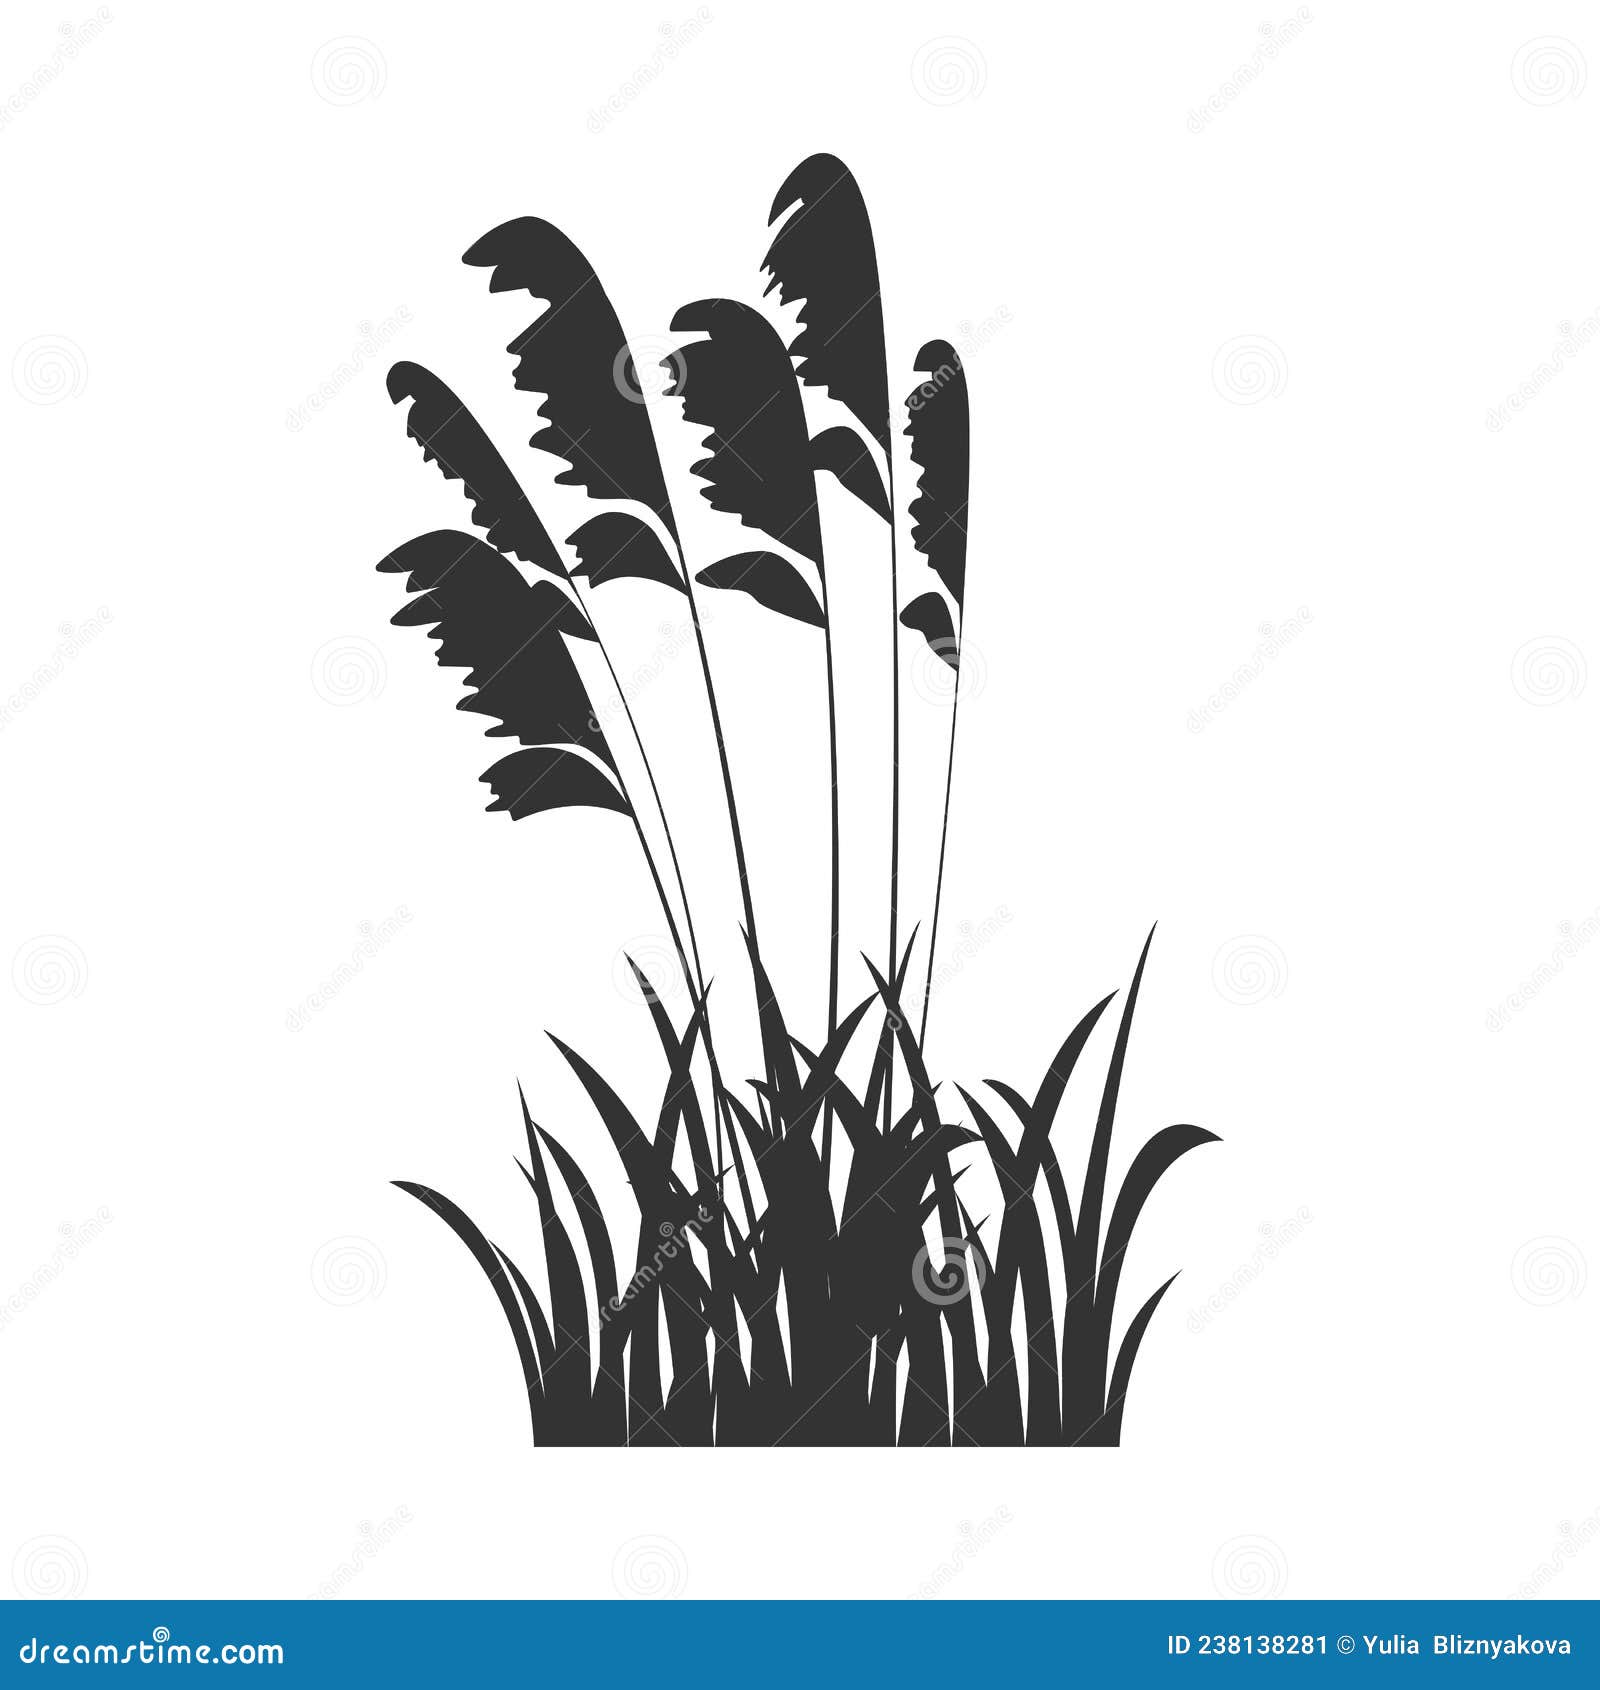 Black Silhouette of Marsh Grass, Lake Reeds. Vector Illustration of ...